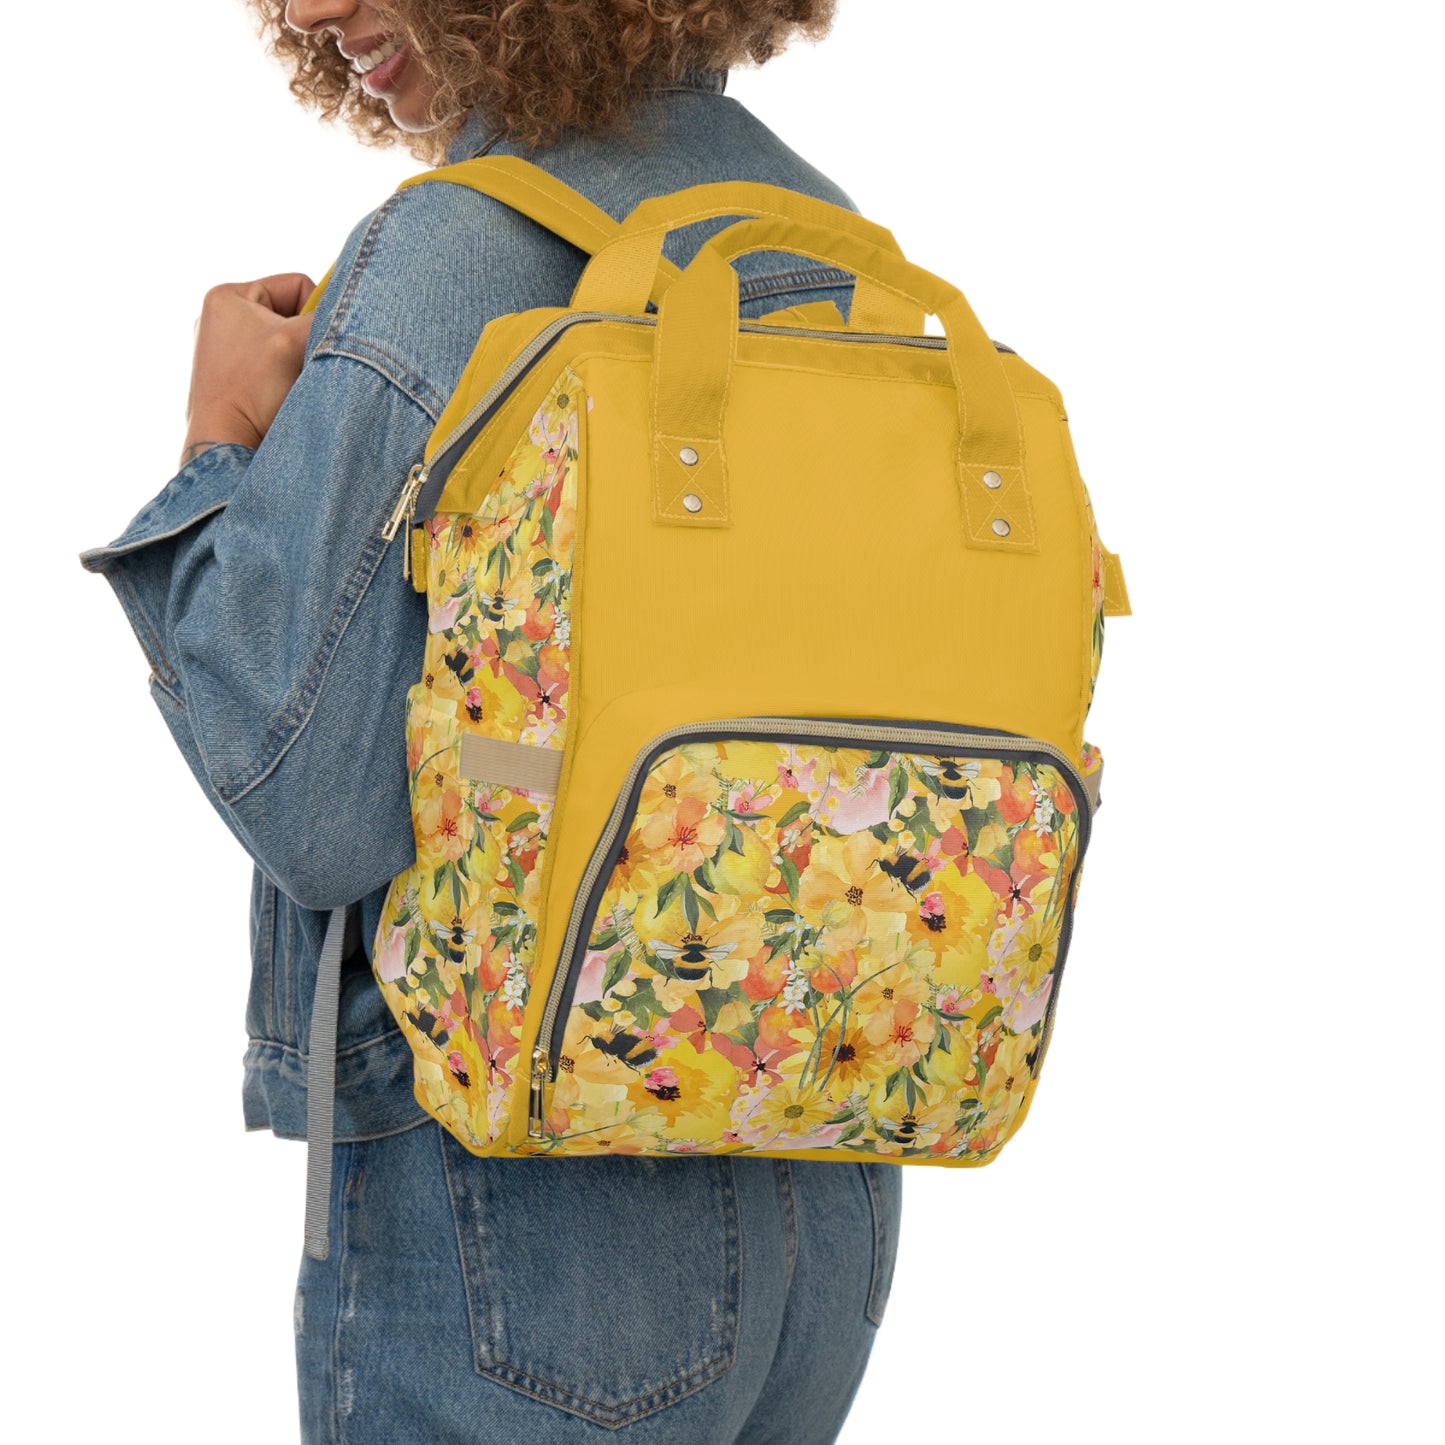 Yellow Cosmos Multifunctional Backpack